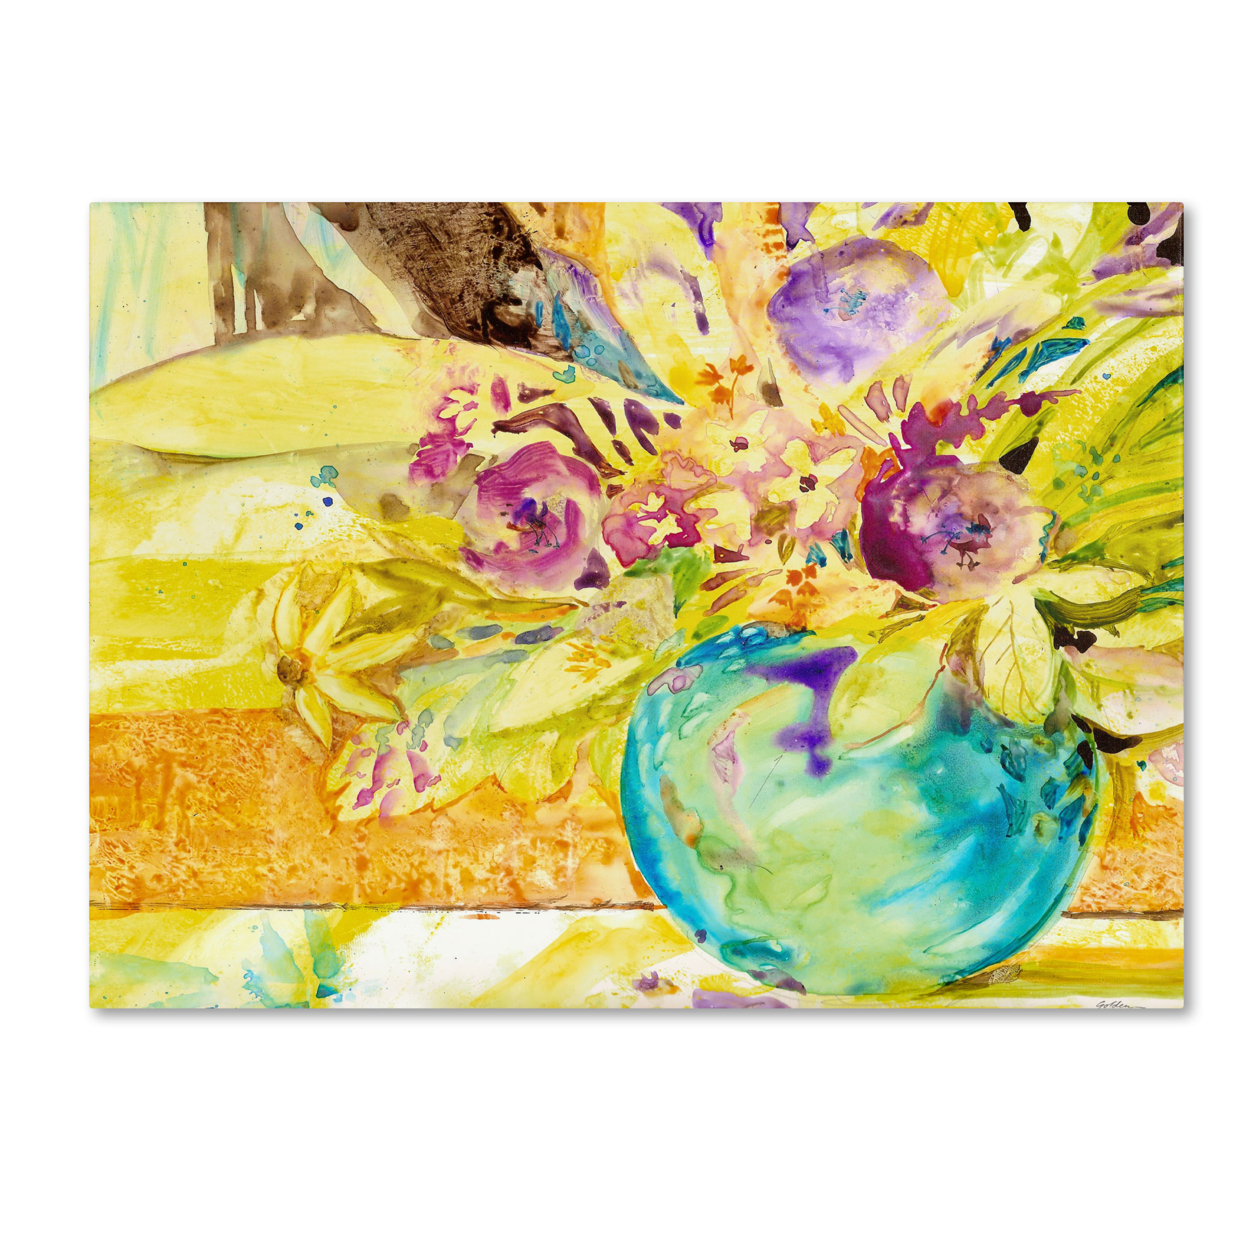 Sheila Golden 'The Aqua Vase' Canvas Wall Art 35 X 47 Inches